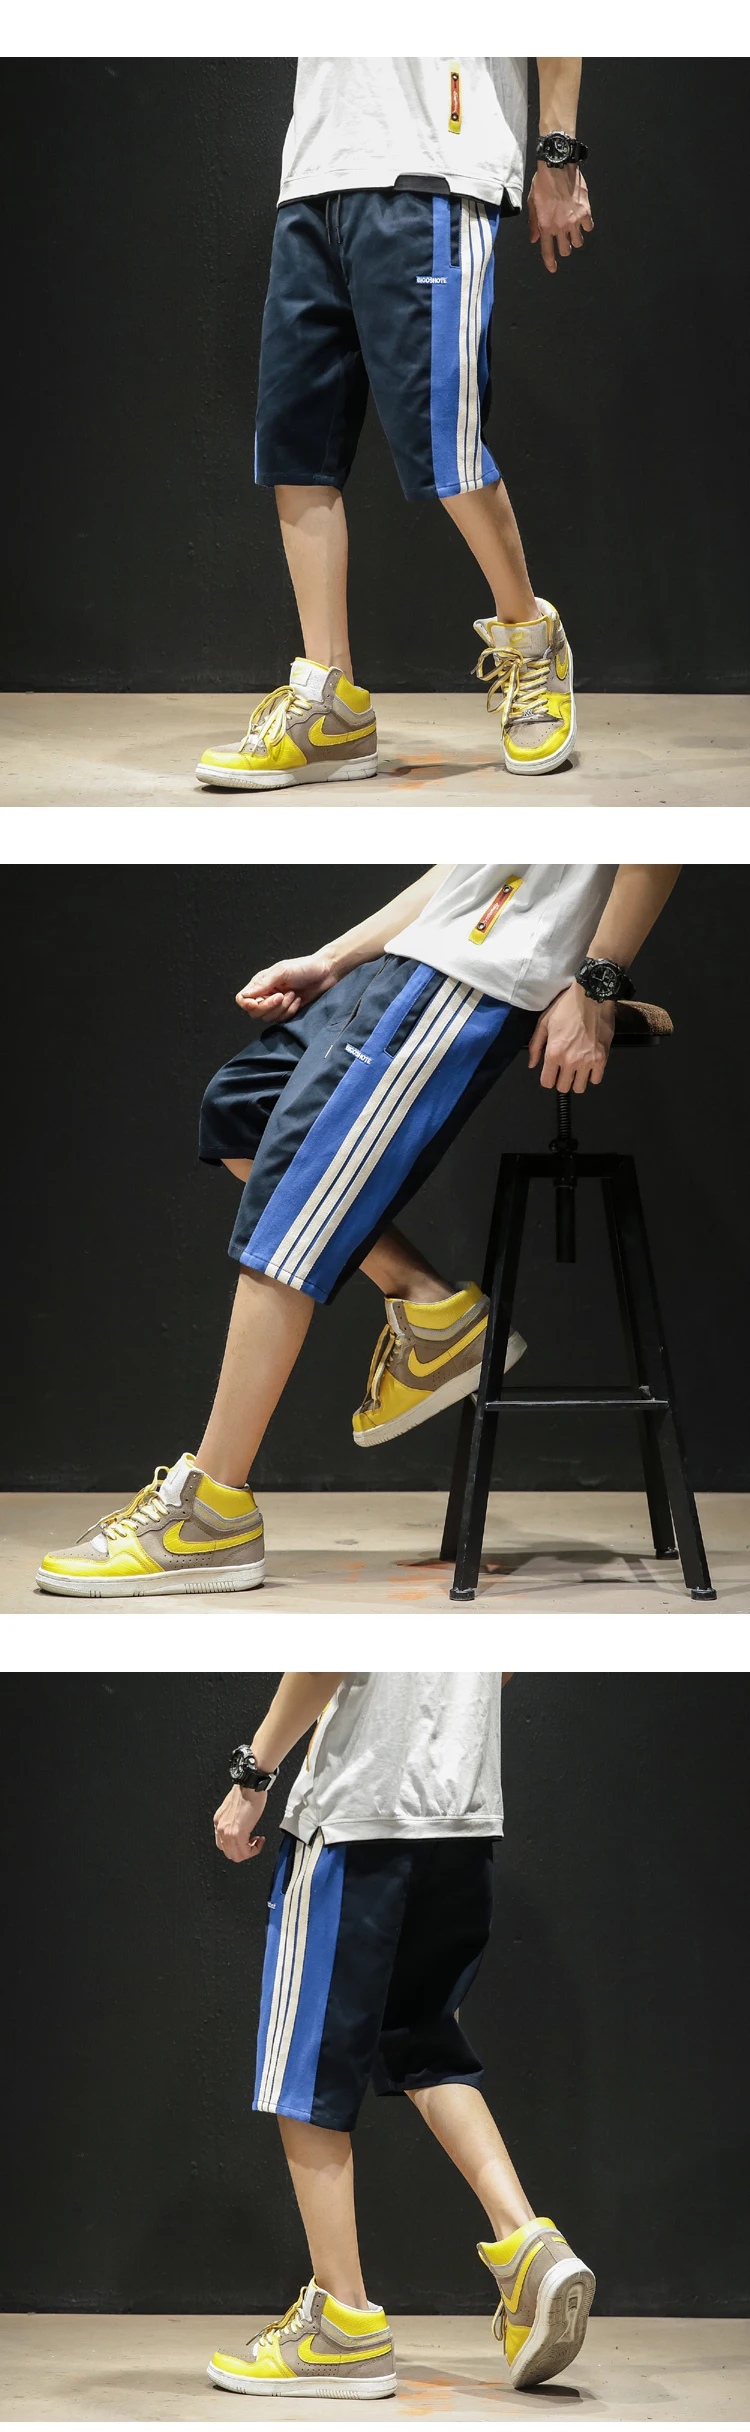 Высокое качество мужские шорты борту 4XL 5XL 2019 Лето штаны в Вертикальную Полоску дизайн тренировки пляжные по колено брюки K1967